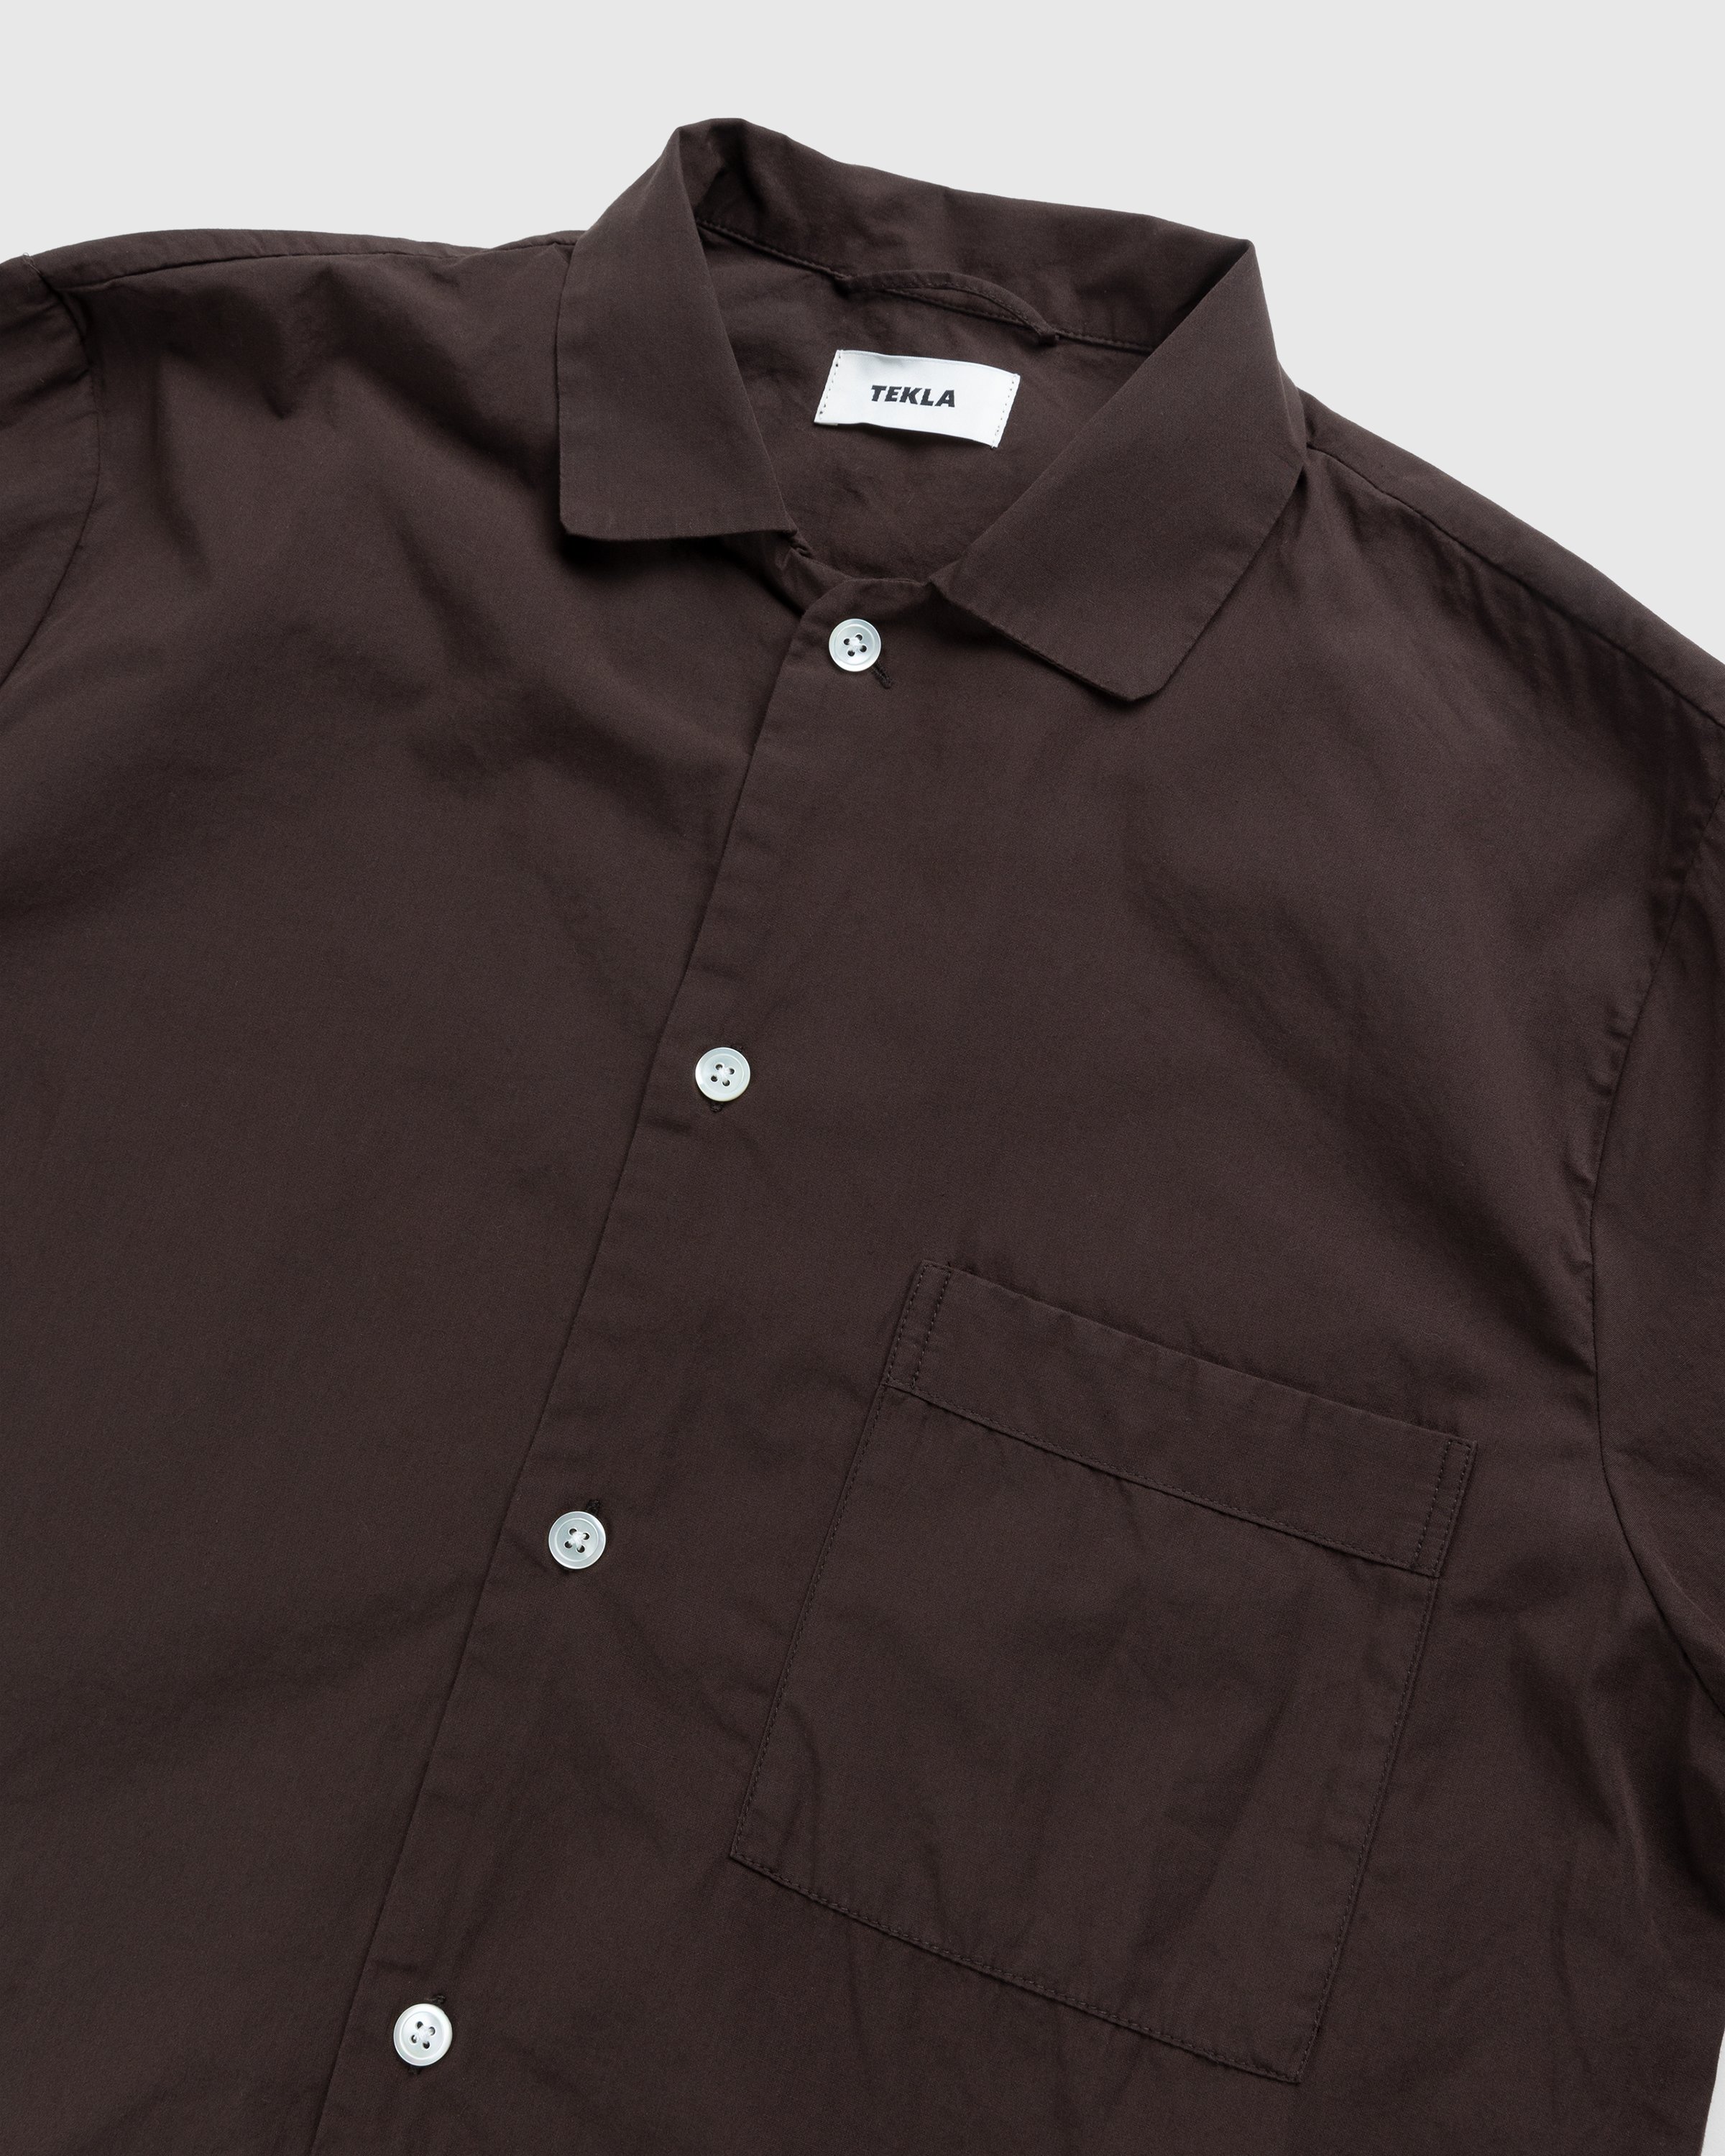 Tekla - Cotton Poplin Pyjamas Shirt Coffee - Clothing - Brown - Image 3